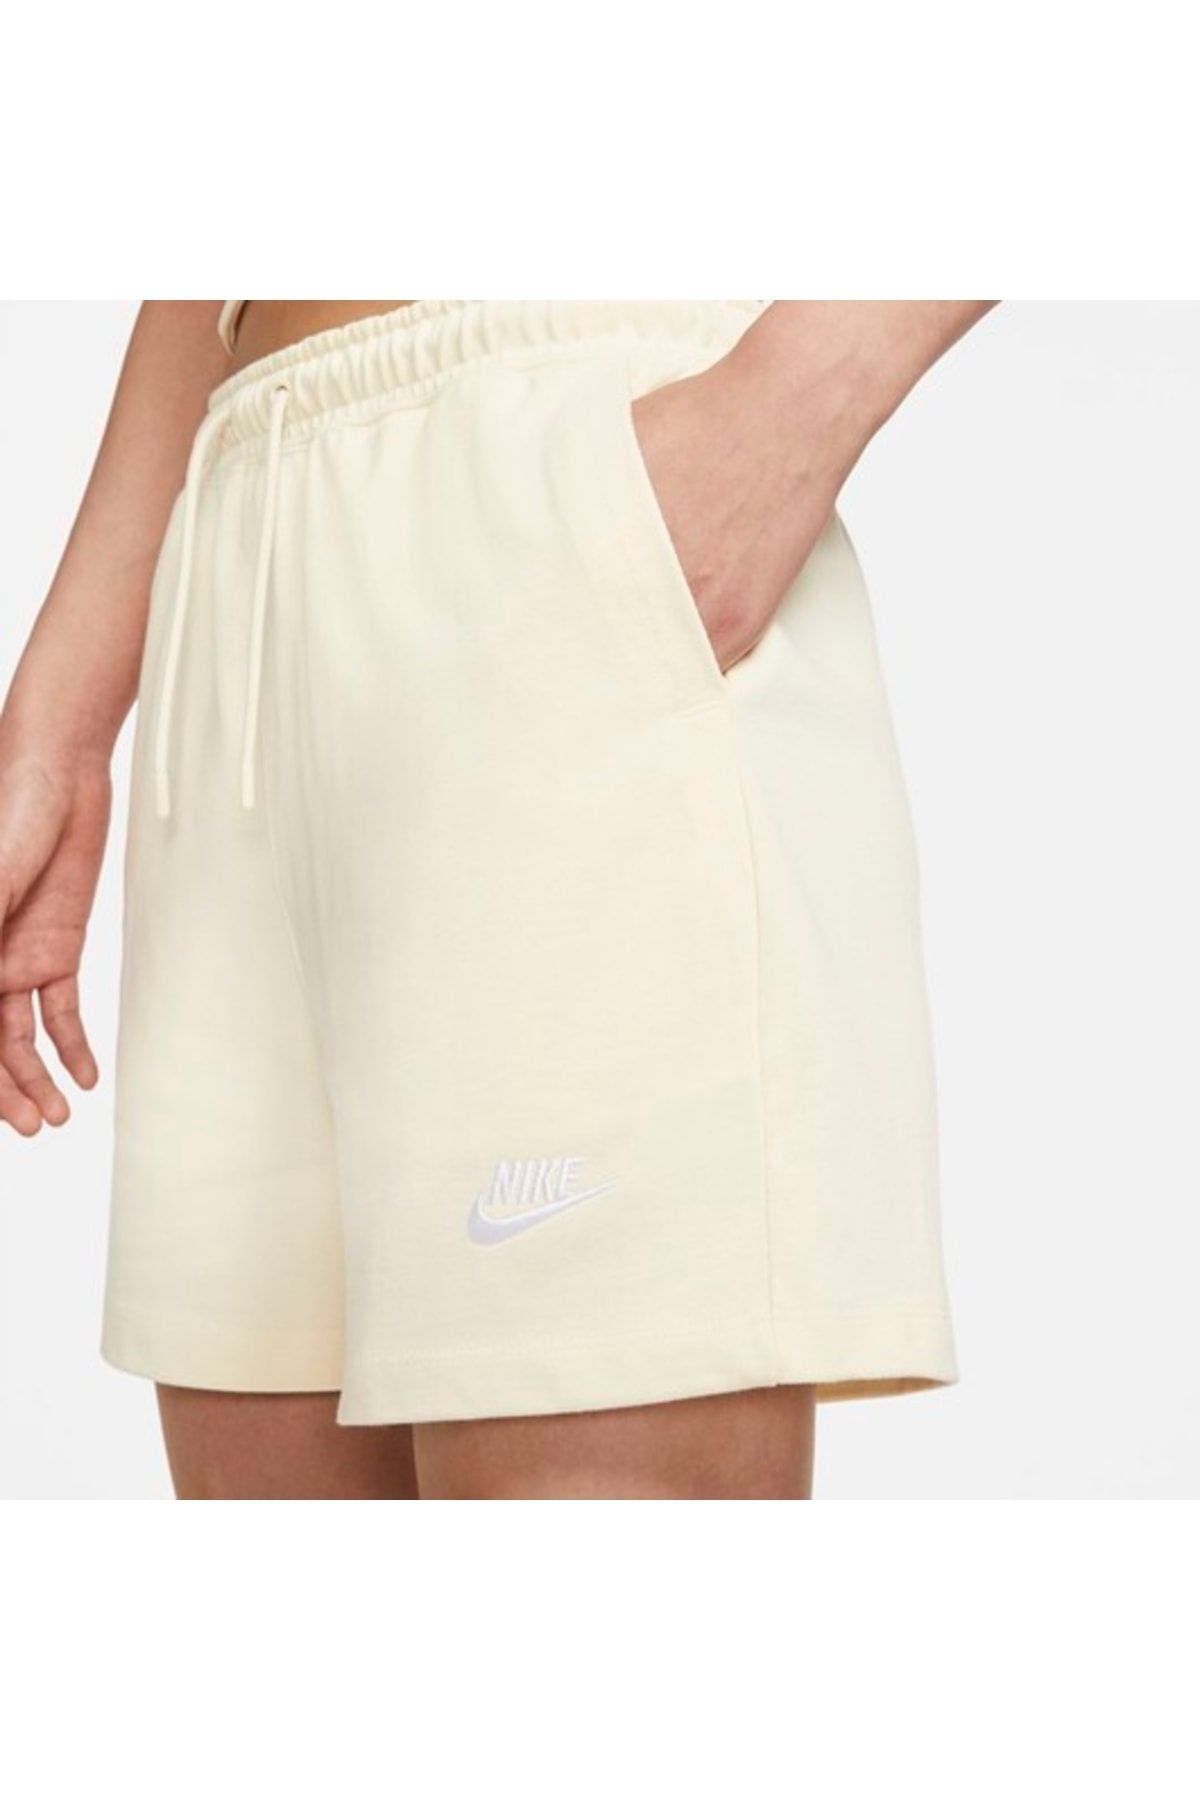 Nike Sportswear Jersey Women's Shorts - Yellow #cj3754-113 - Trendyol